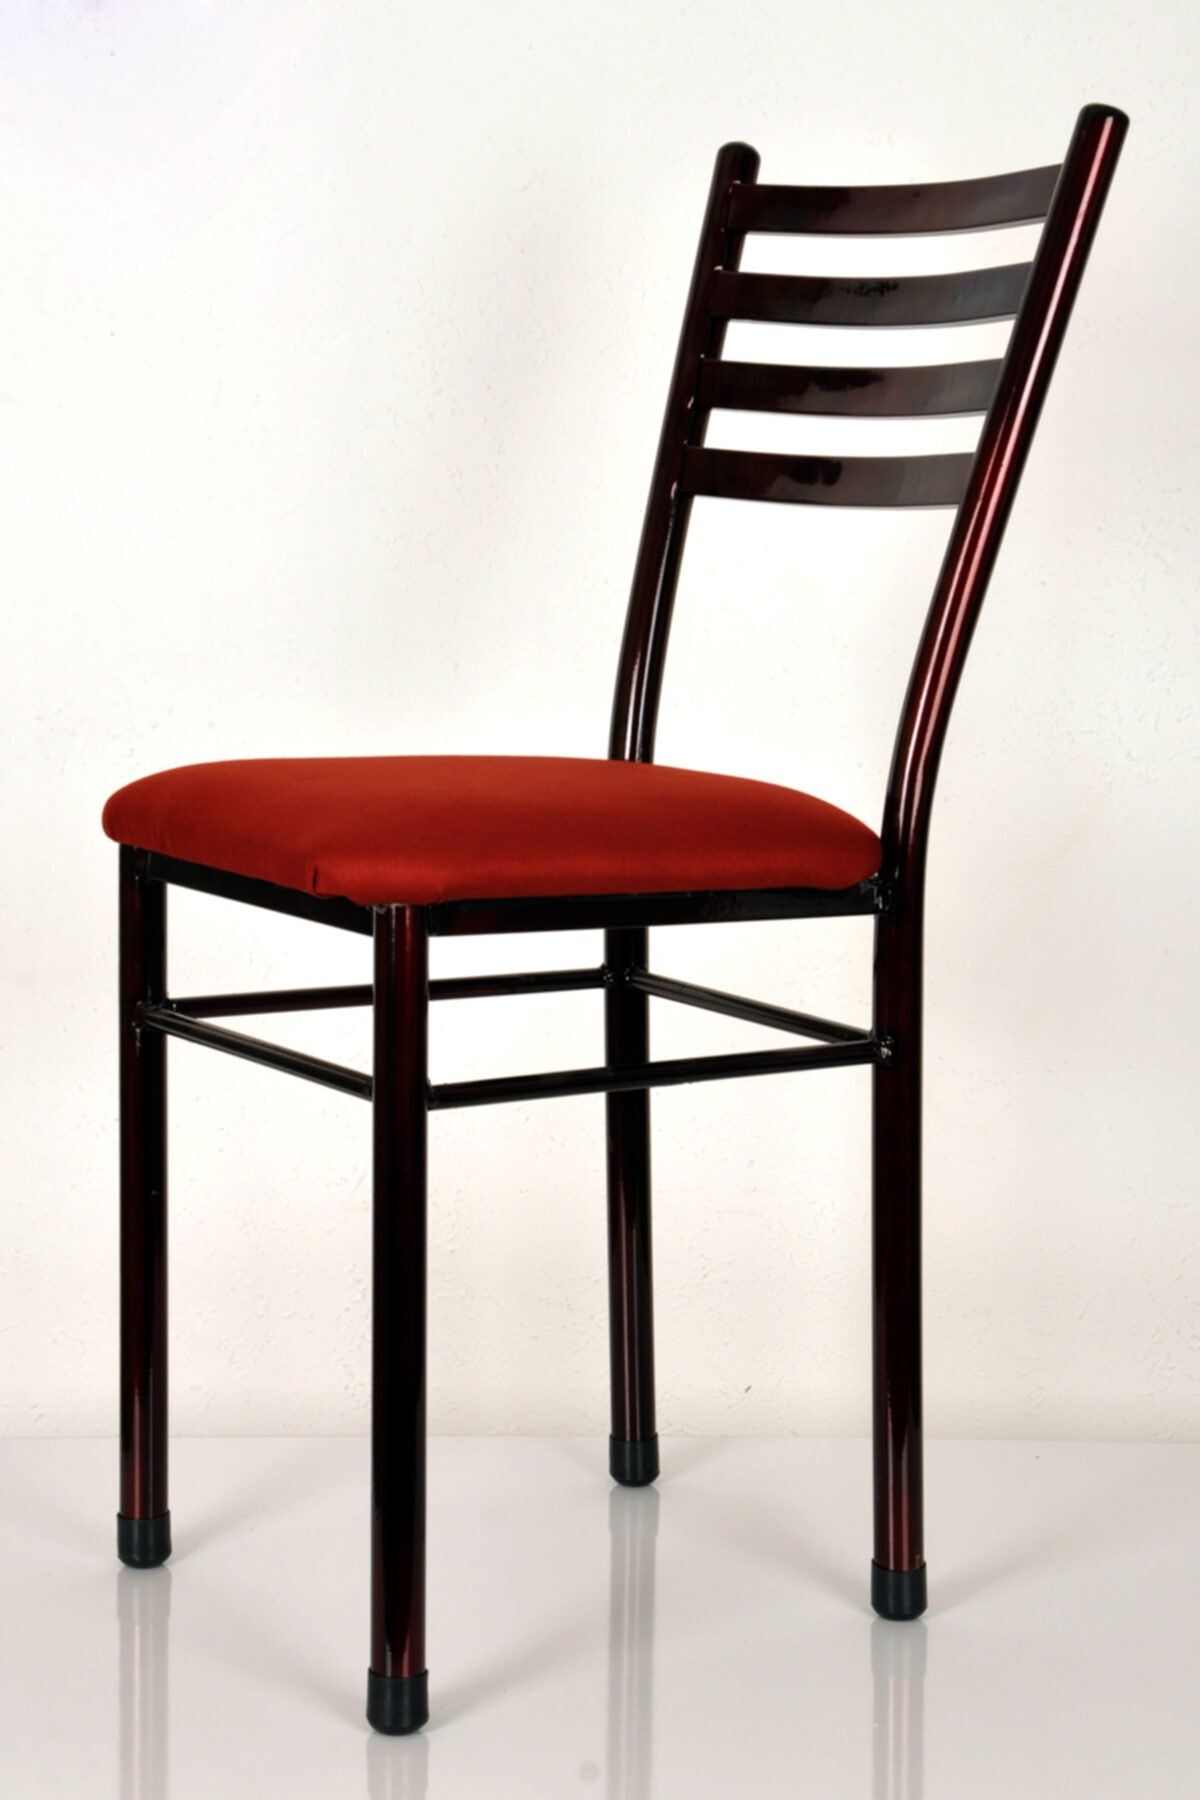 yılmaz masacılık 2 Adet Bordo Mutfak Sandalyesi Demir Sandalye Retro Sandalye